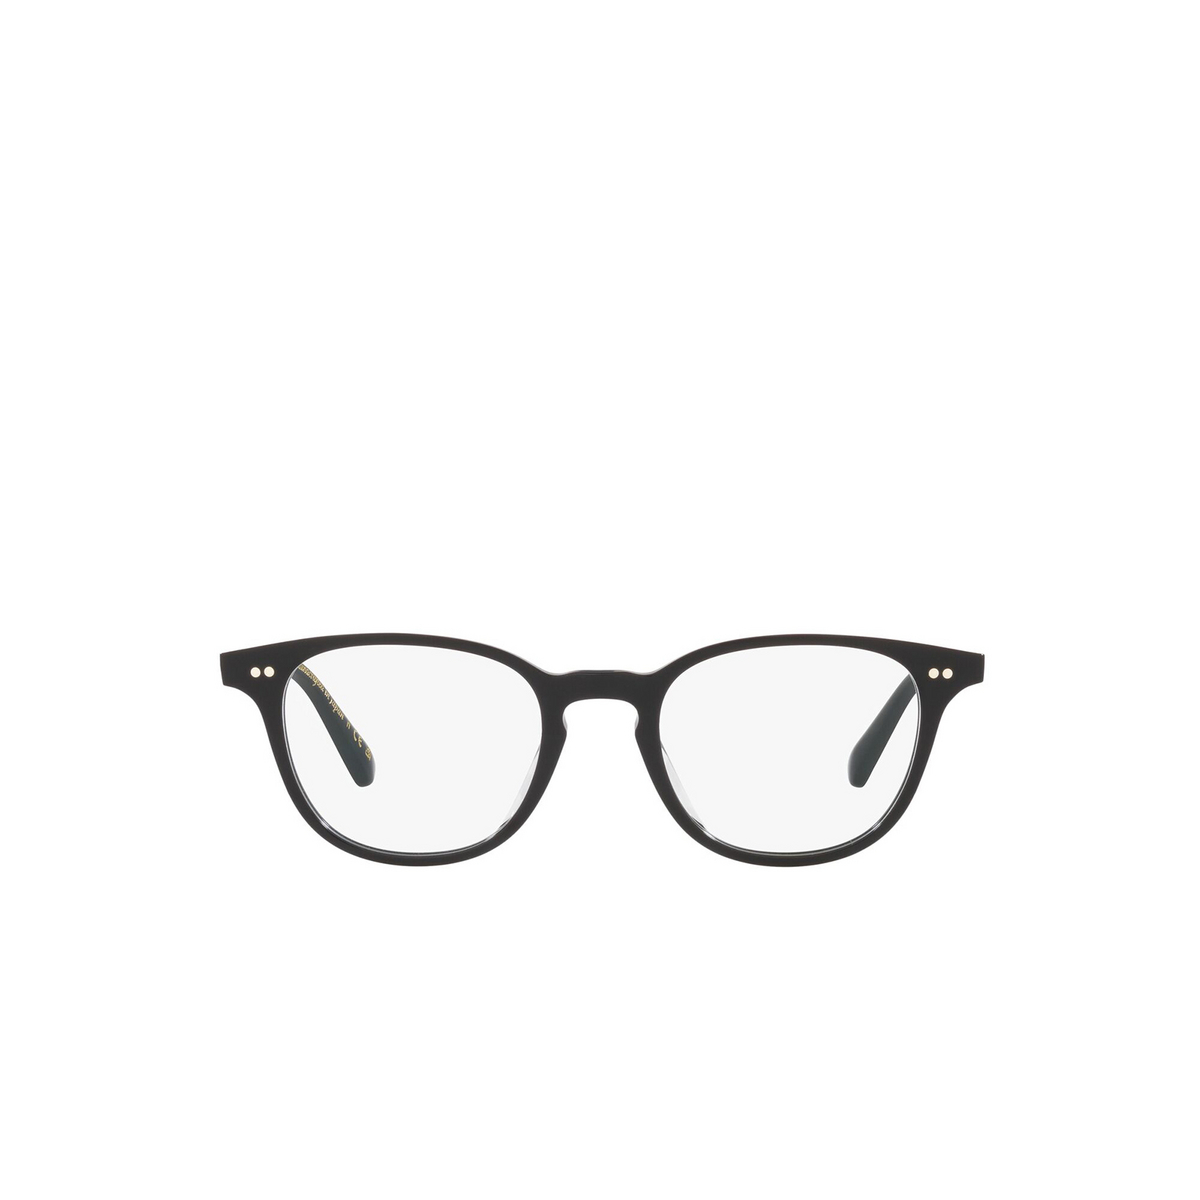 Oliver Peoples® Square Eyeglasses: Sadao OV5481U color Black 1731 - front view.